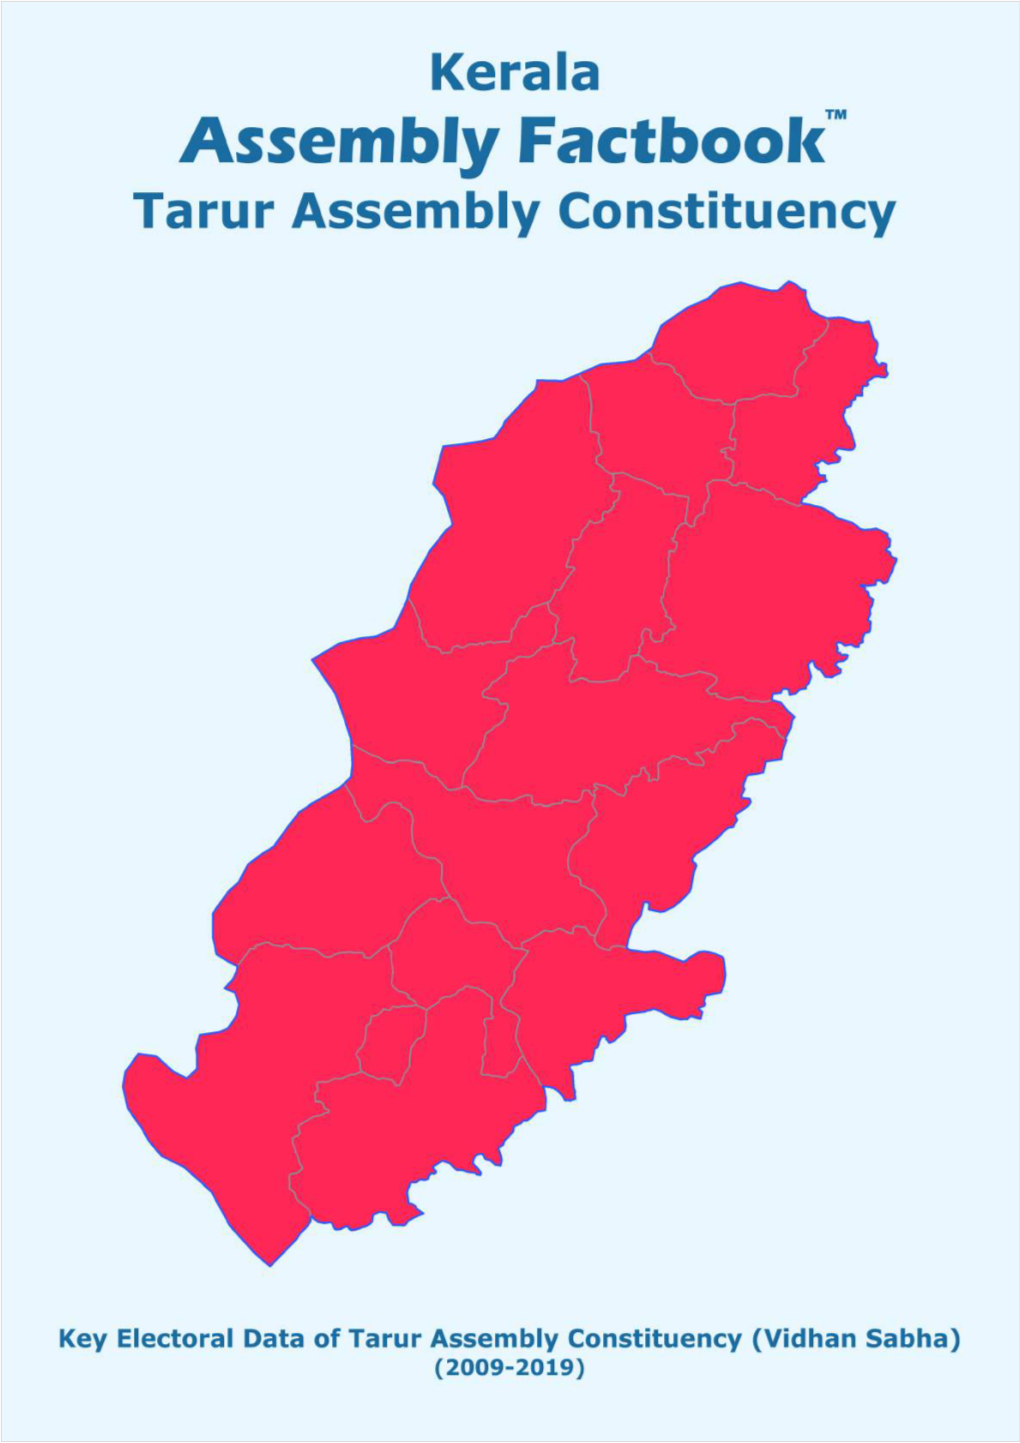 Tarur Assembly Kerala Factbook